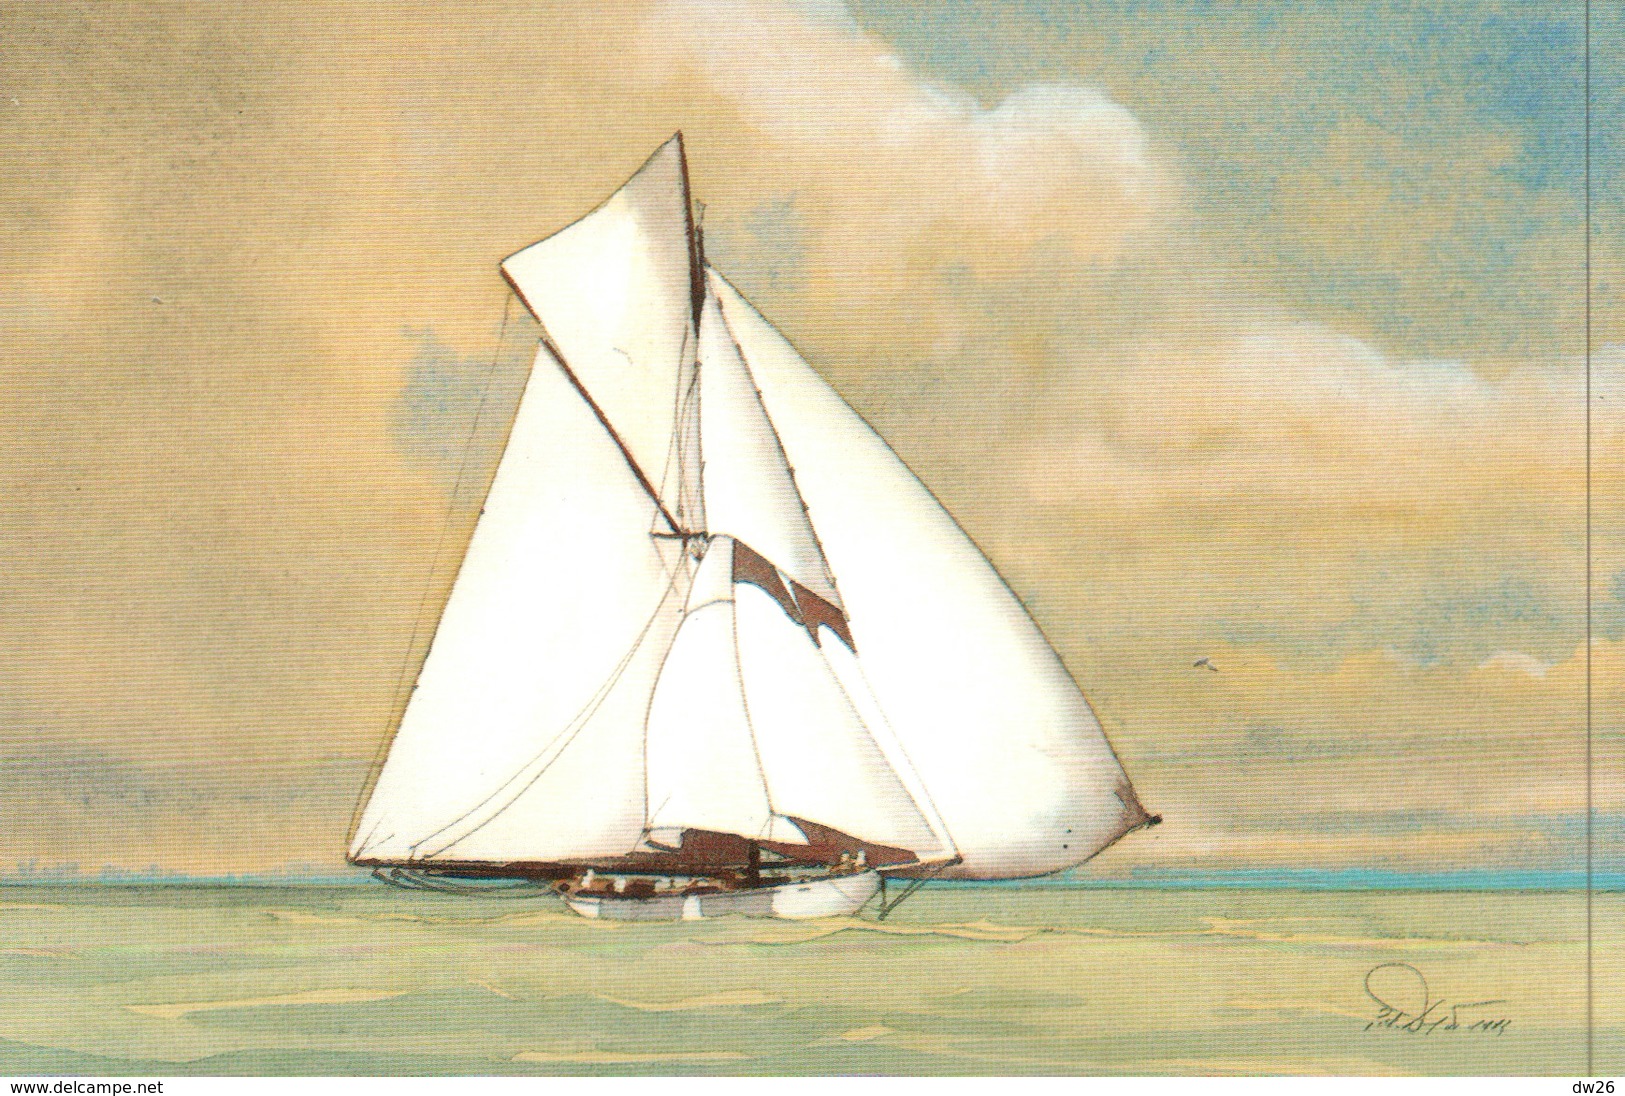 Voile - Coupe De L'América - Le Bona 1903, Aquarelle Pierre-Yves Dayot - Editions La Découvrance - Sailing